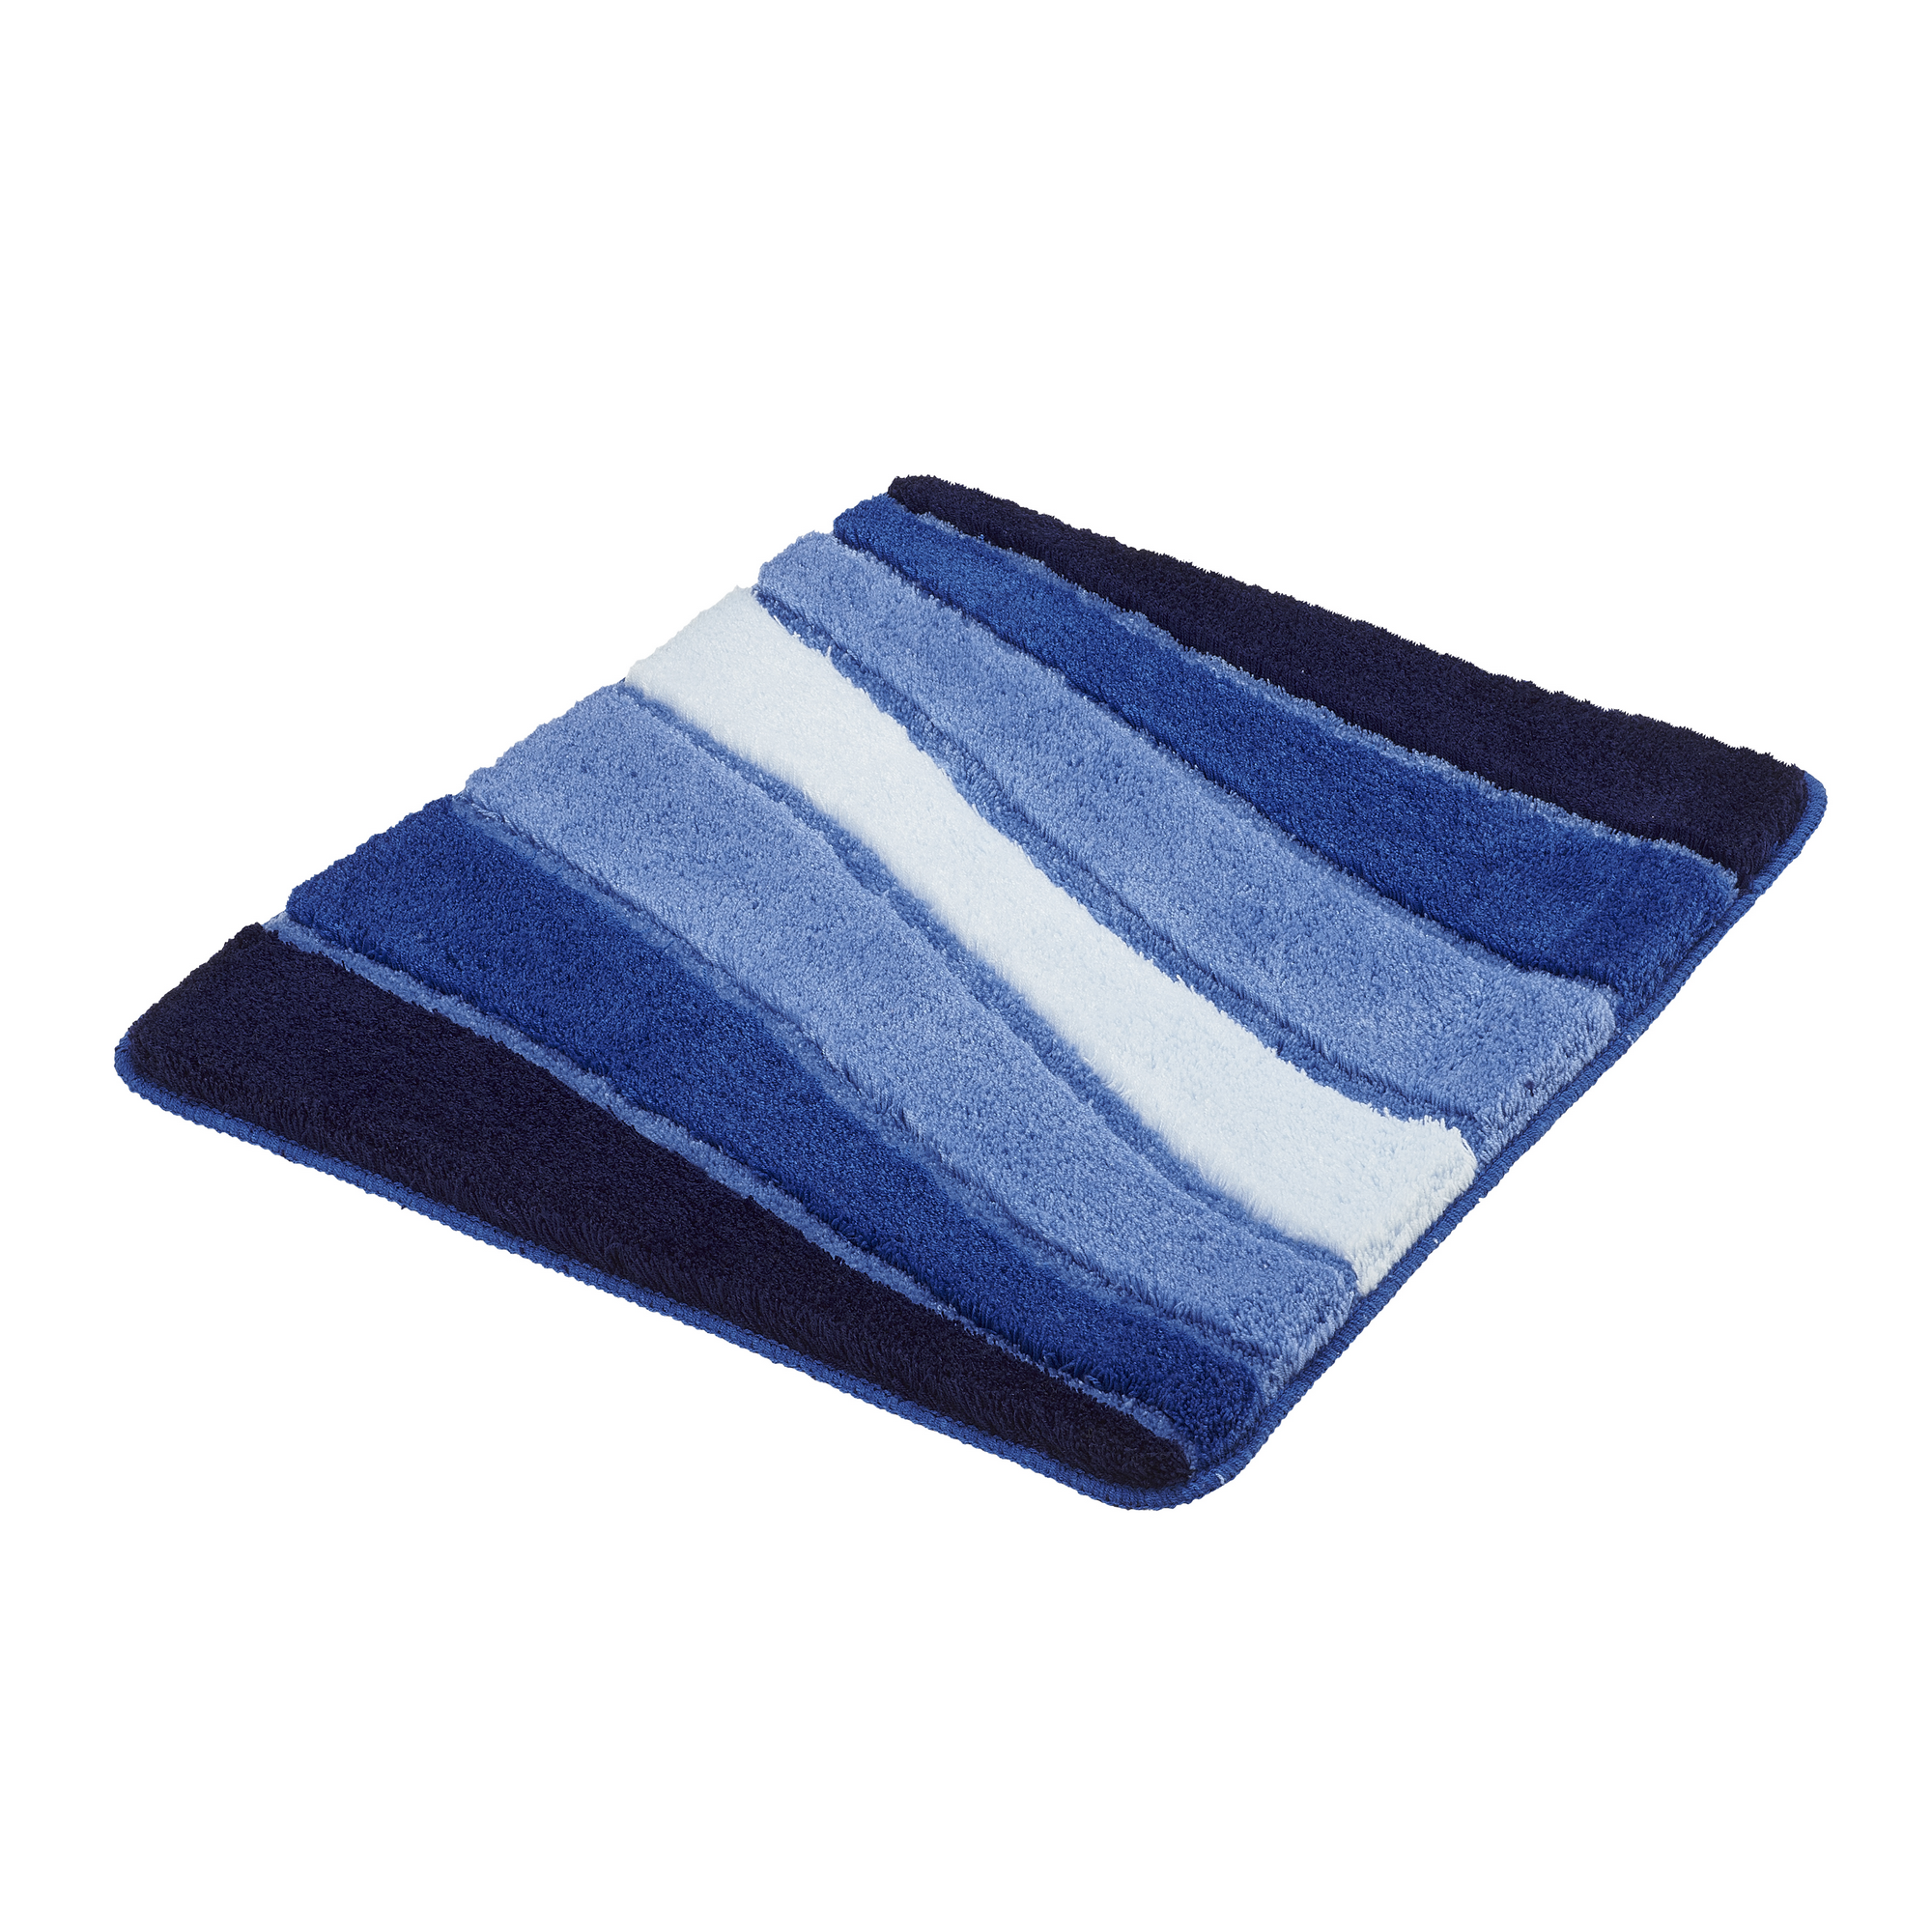 Badteppich 'Ocean' blau 55 x 65 cm + product picture